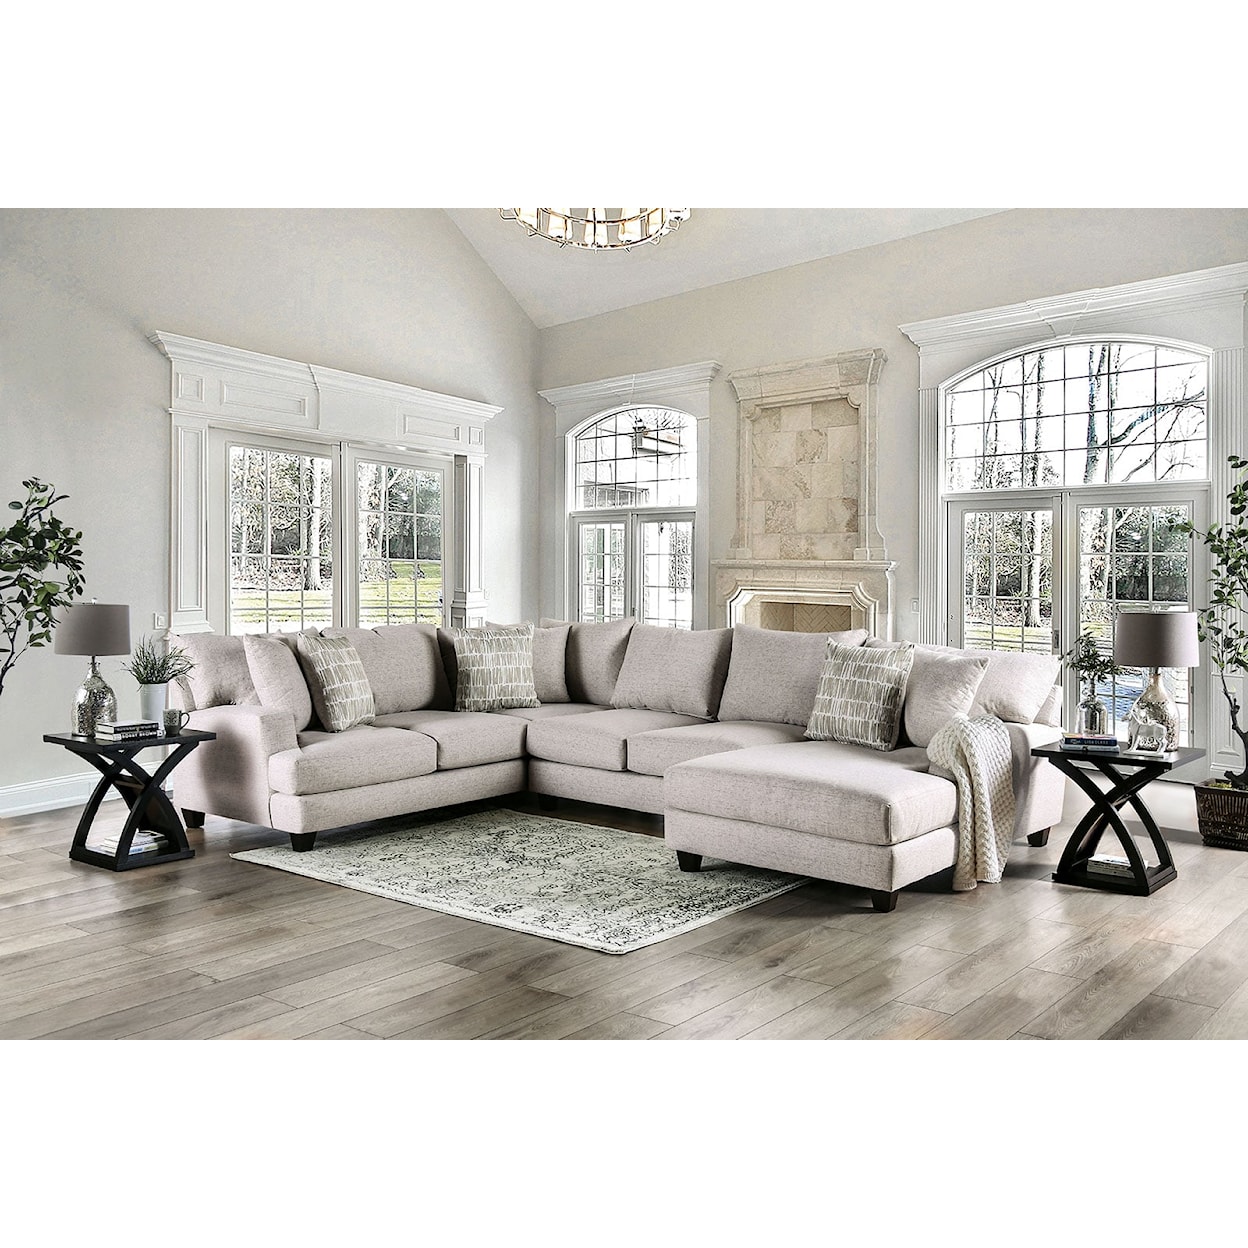 Furniture of America ALIDENE Sectional, Light Gray